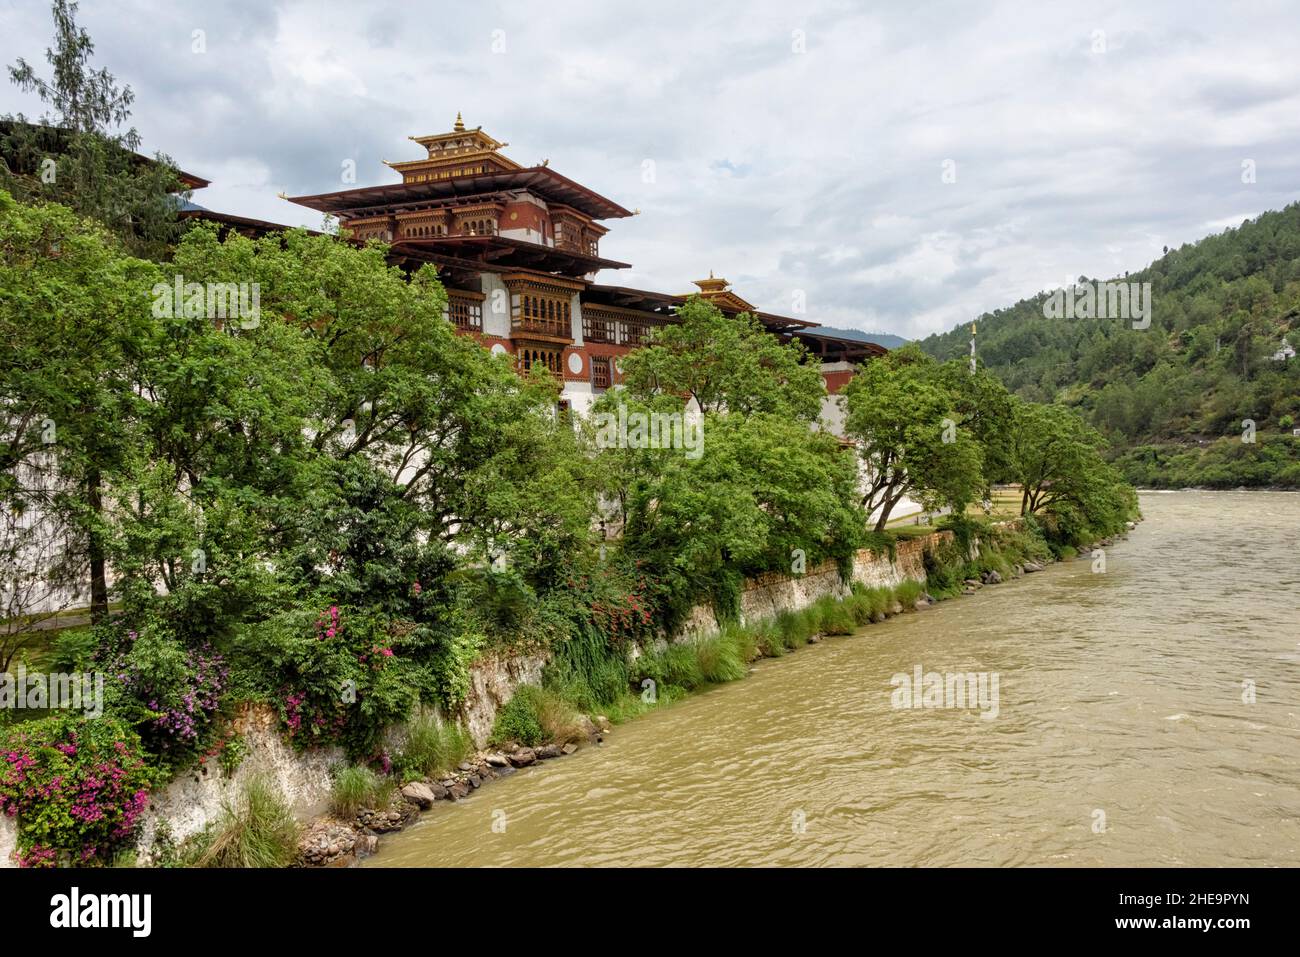 Punakha Dzong am Zusammenfluss von Pho Chhu (Vater Fluss) und Mo Chhu (Mutter Fluss) Flüsse, Punakha, Bhutan Stockfoto